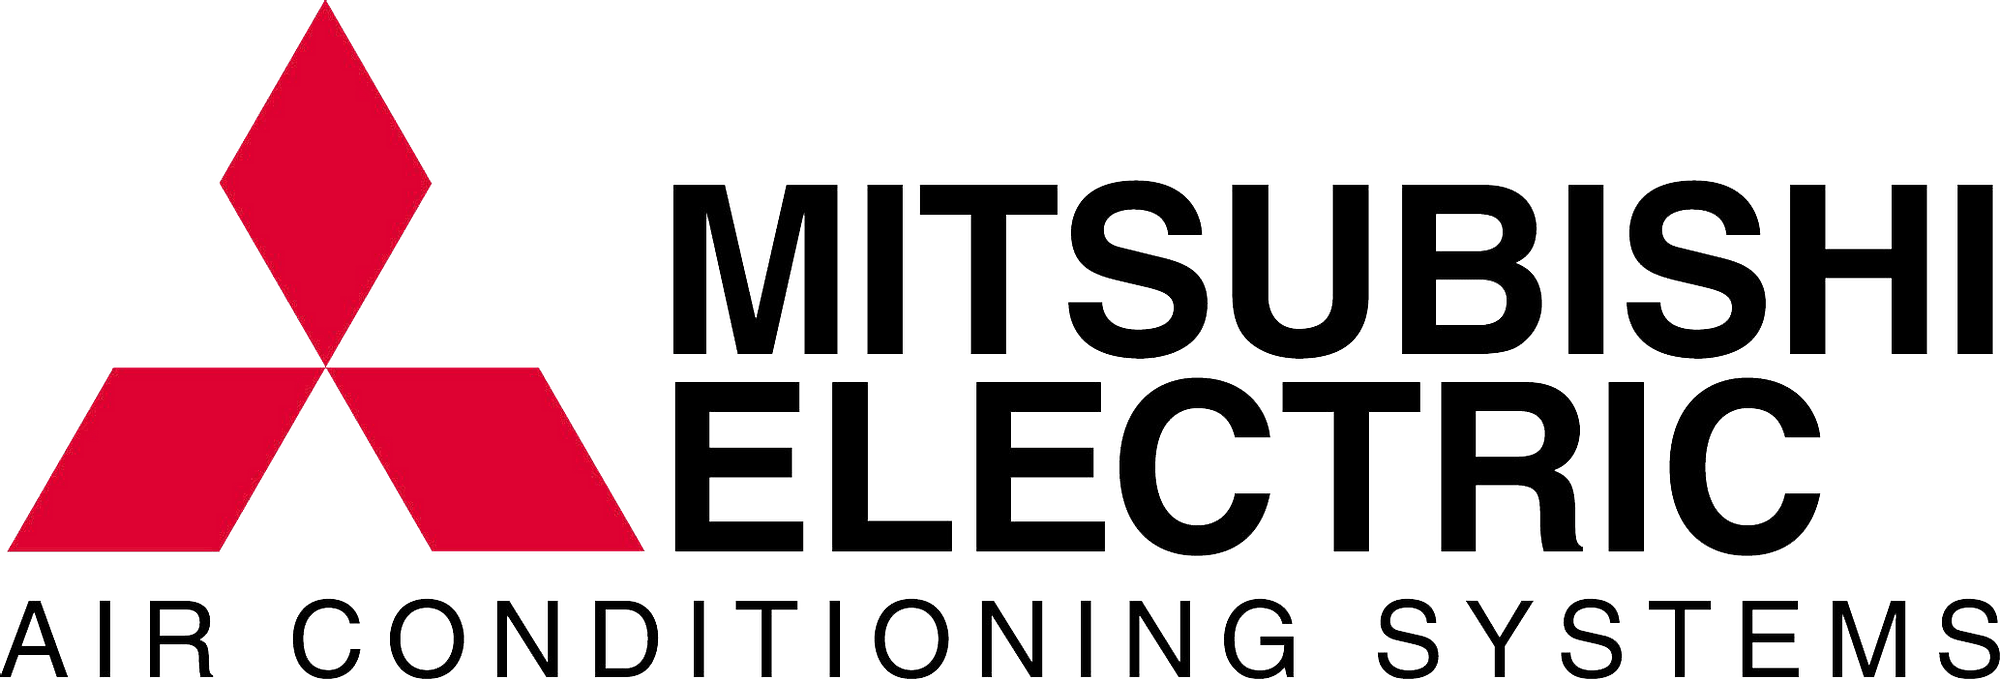 Mitsubishi Transparent Image